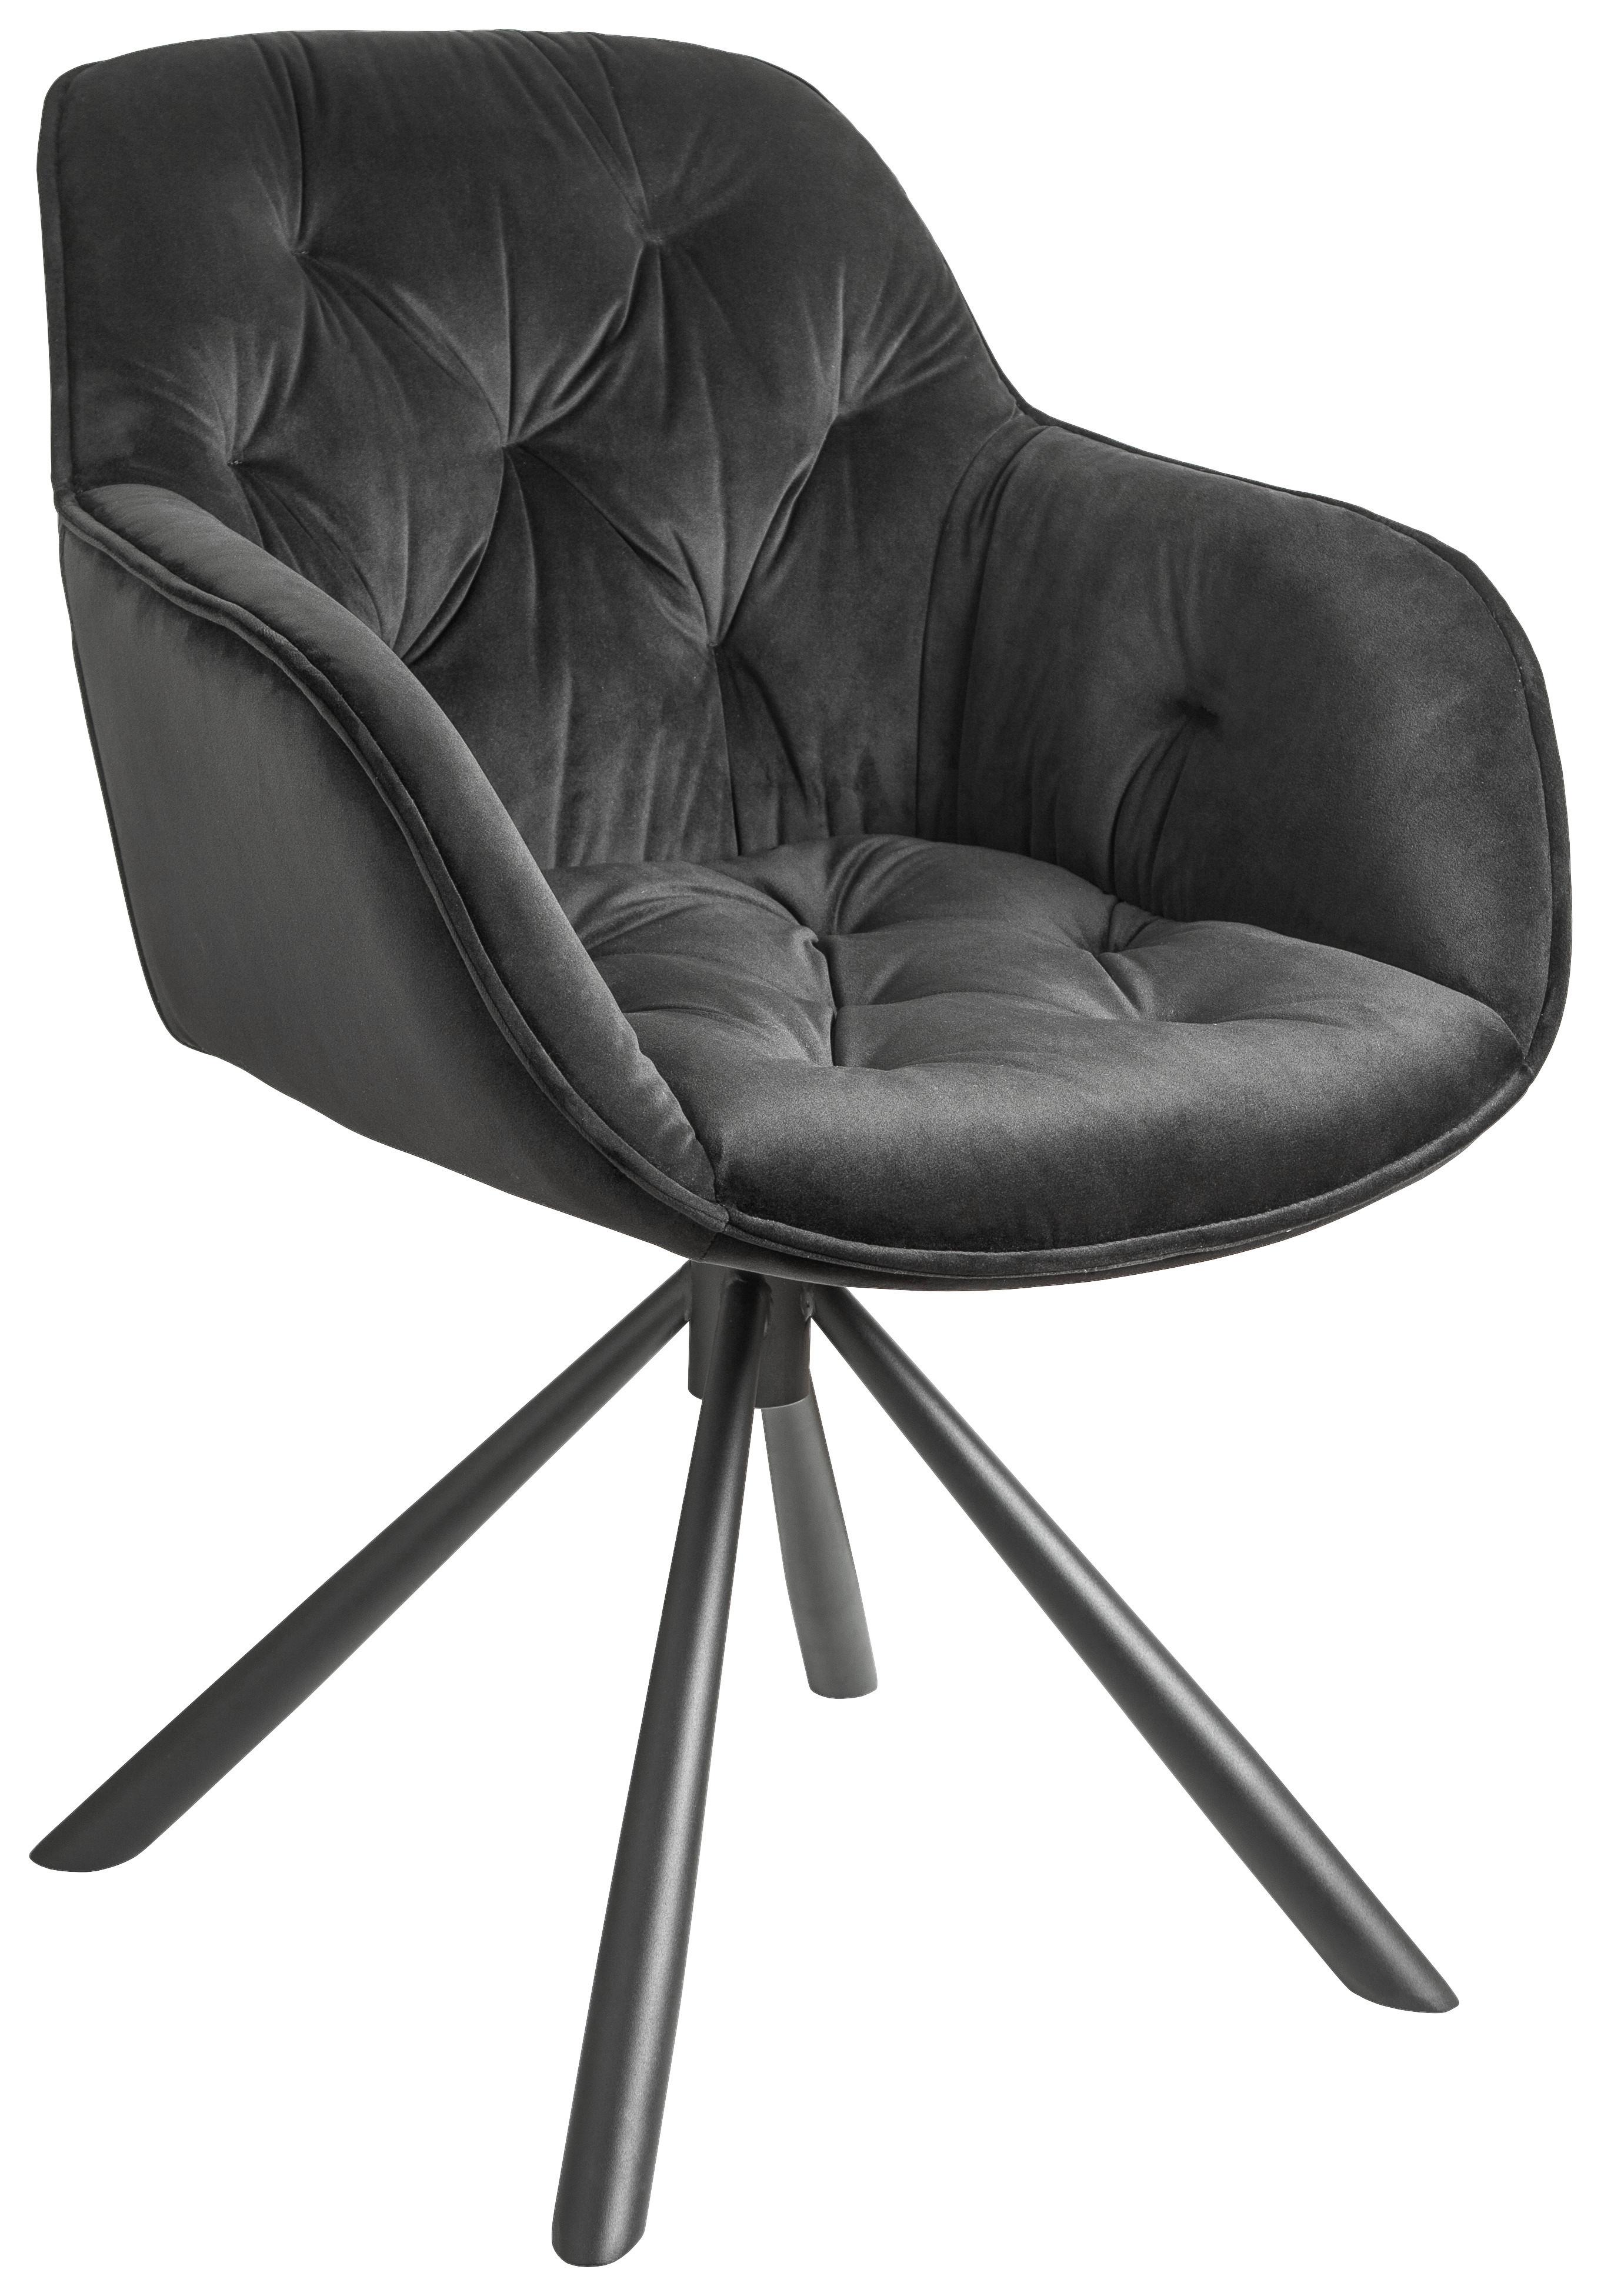 Židle Eileen Černá - černá, Lifestyle, kov/dřevo (68/86/64cm) - Premium Living